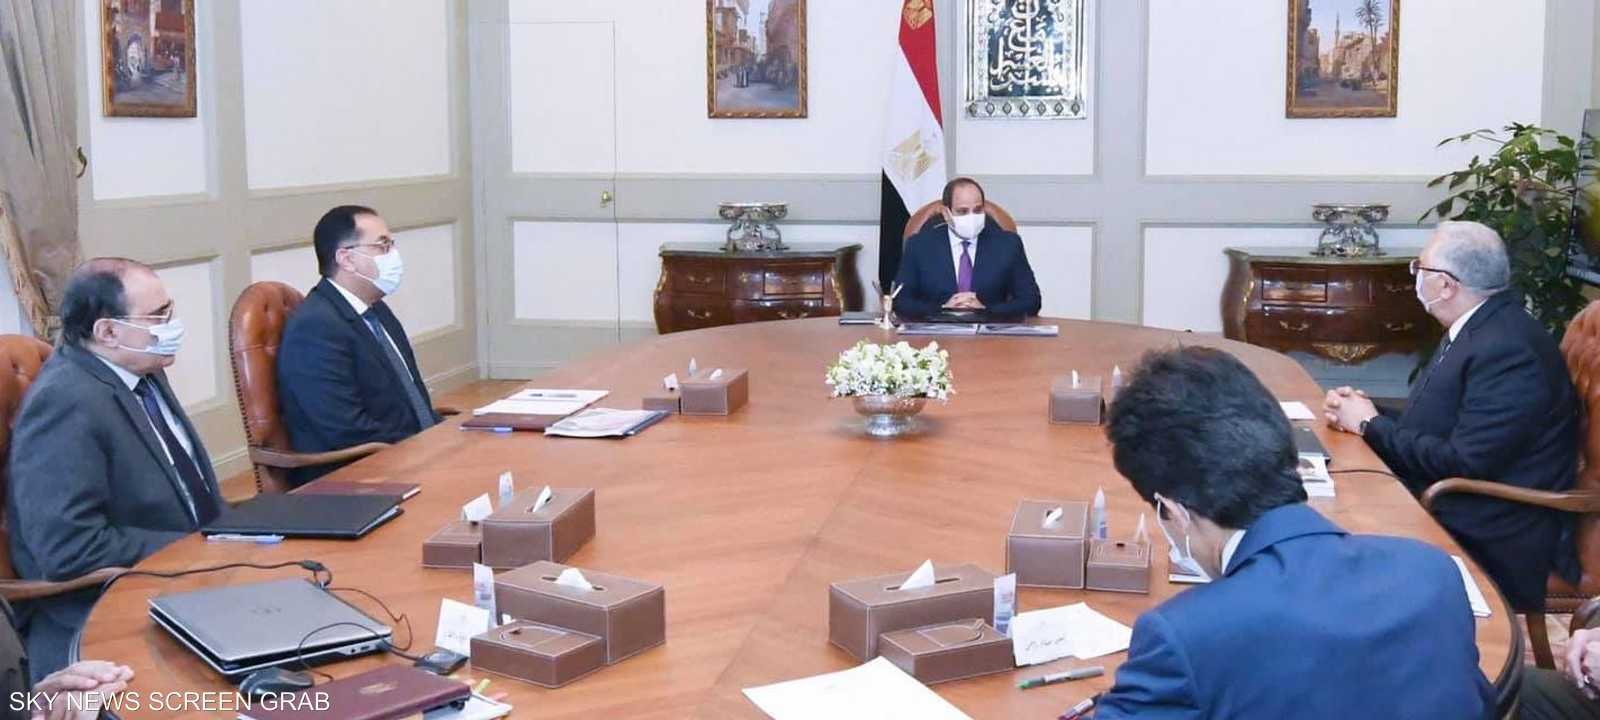 الرئيس المصري استعرض المشروع "الدلتا الجديدة"